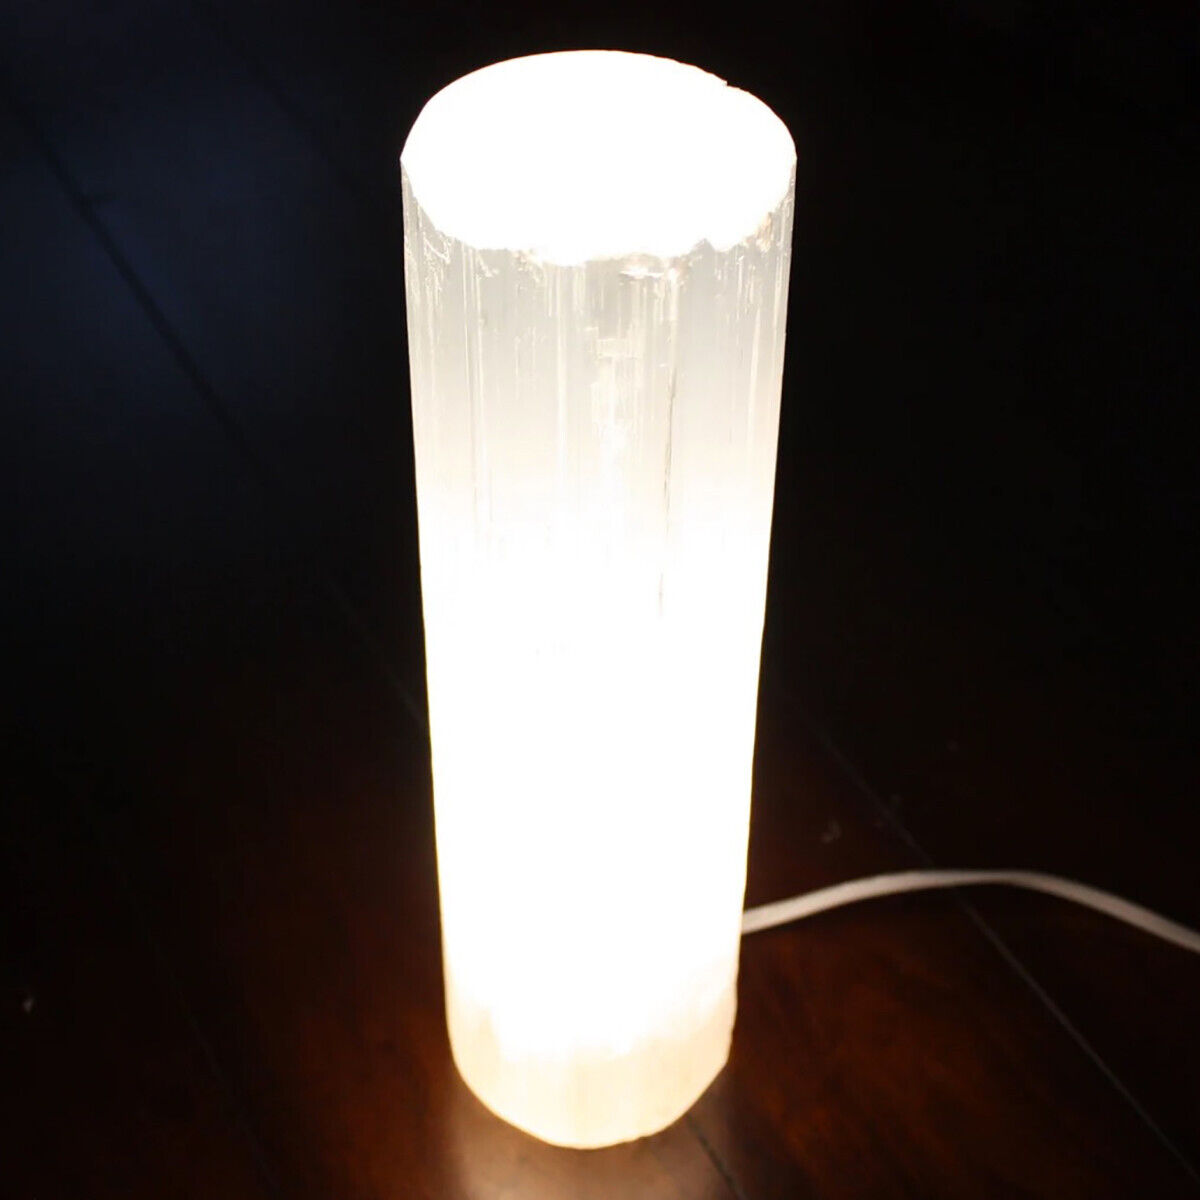 XL Selenite Tower Lamp Crystal 